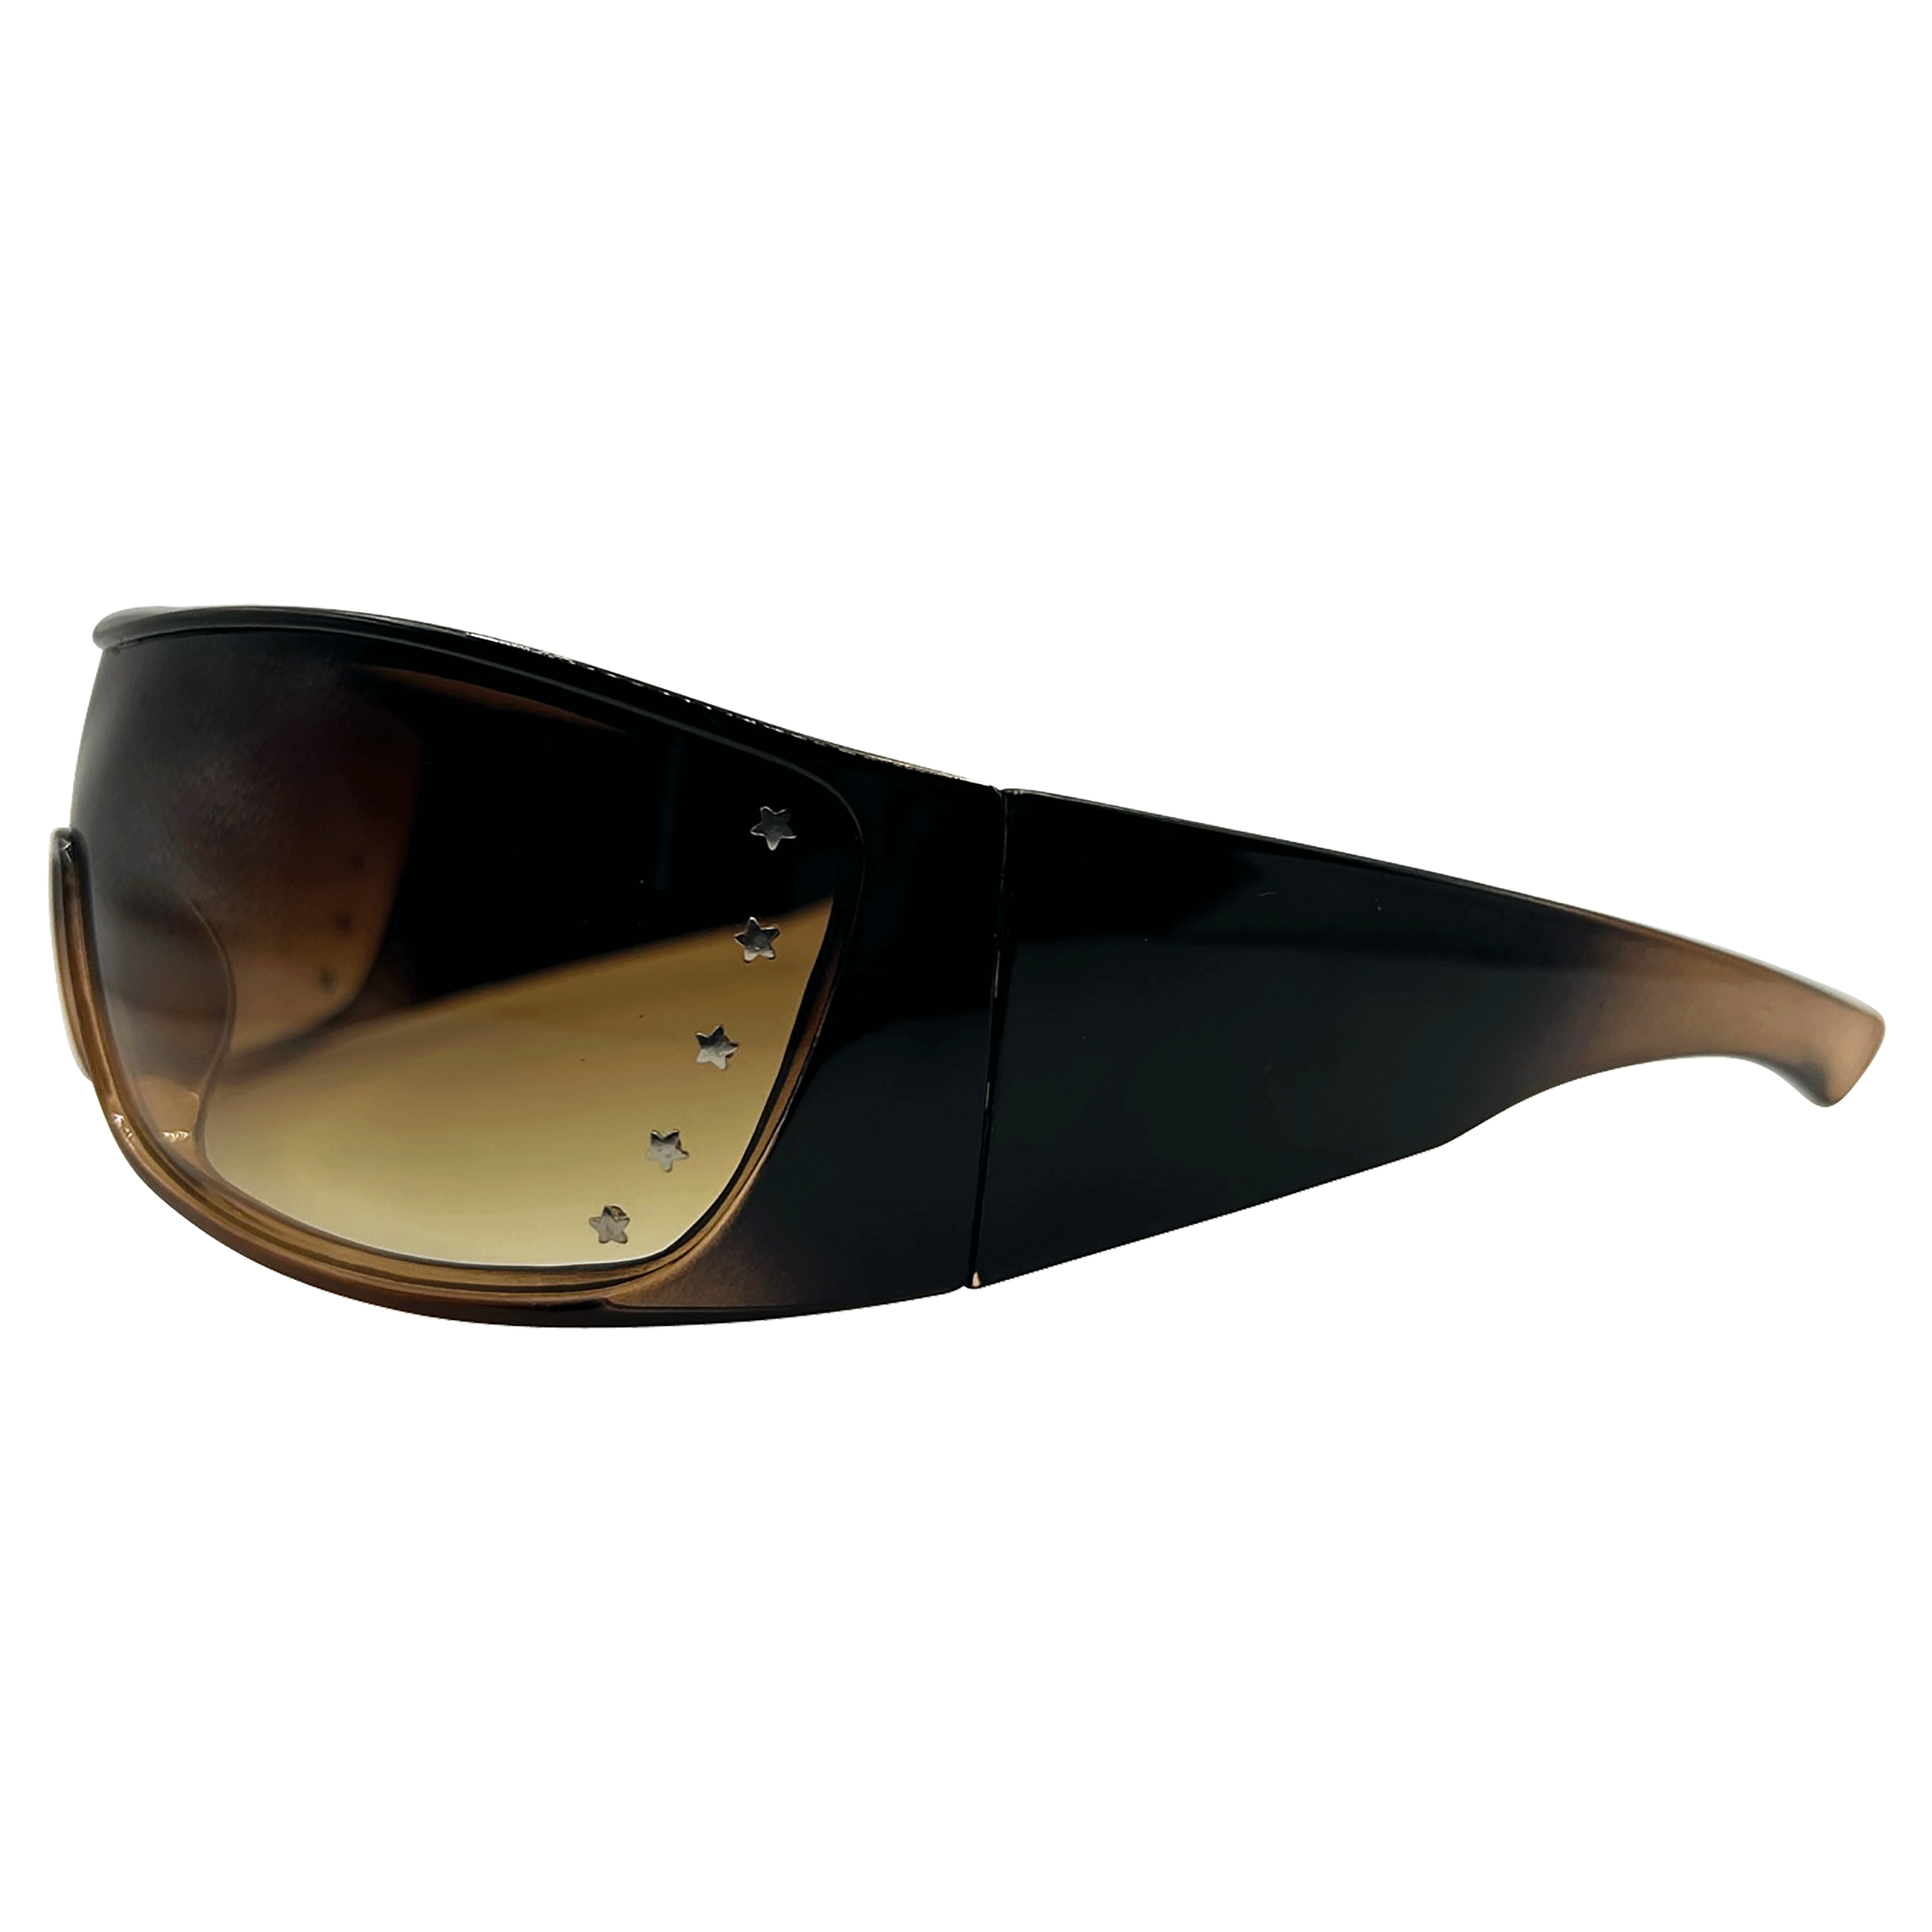 SUPERSTAR Shield Vintage Fashion Sunglasses | Giant Vintage